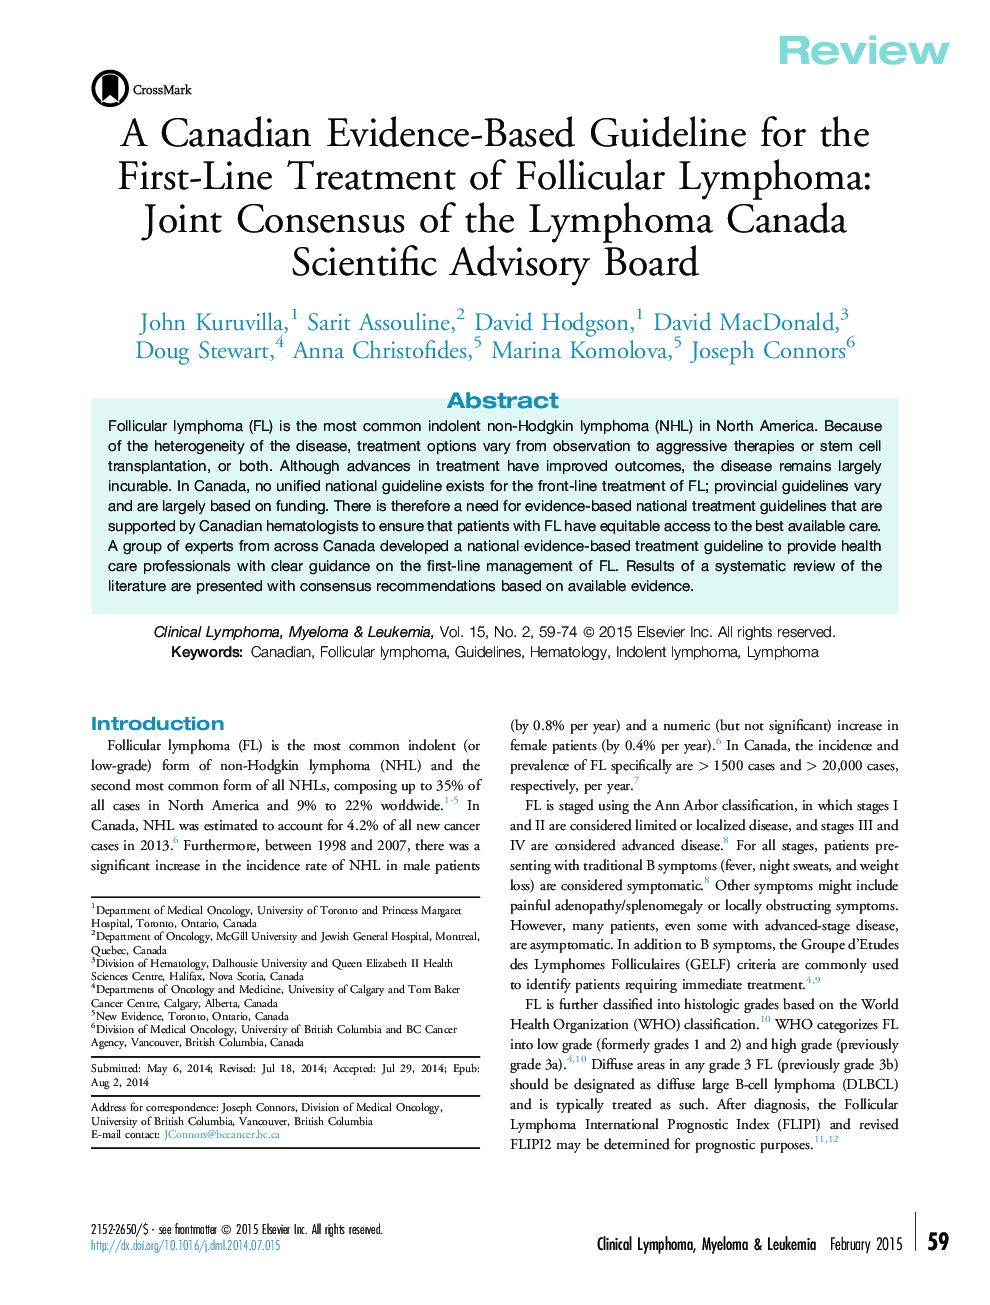 یک راهنمای مبتنی بر شواهد کانادا برای اولین خط درمان لنفوم فولیکول: توافق مشترک از هیئت مشاوره علمی لنفوم کانادا 